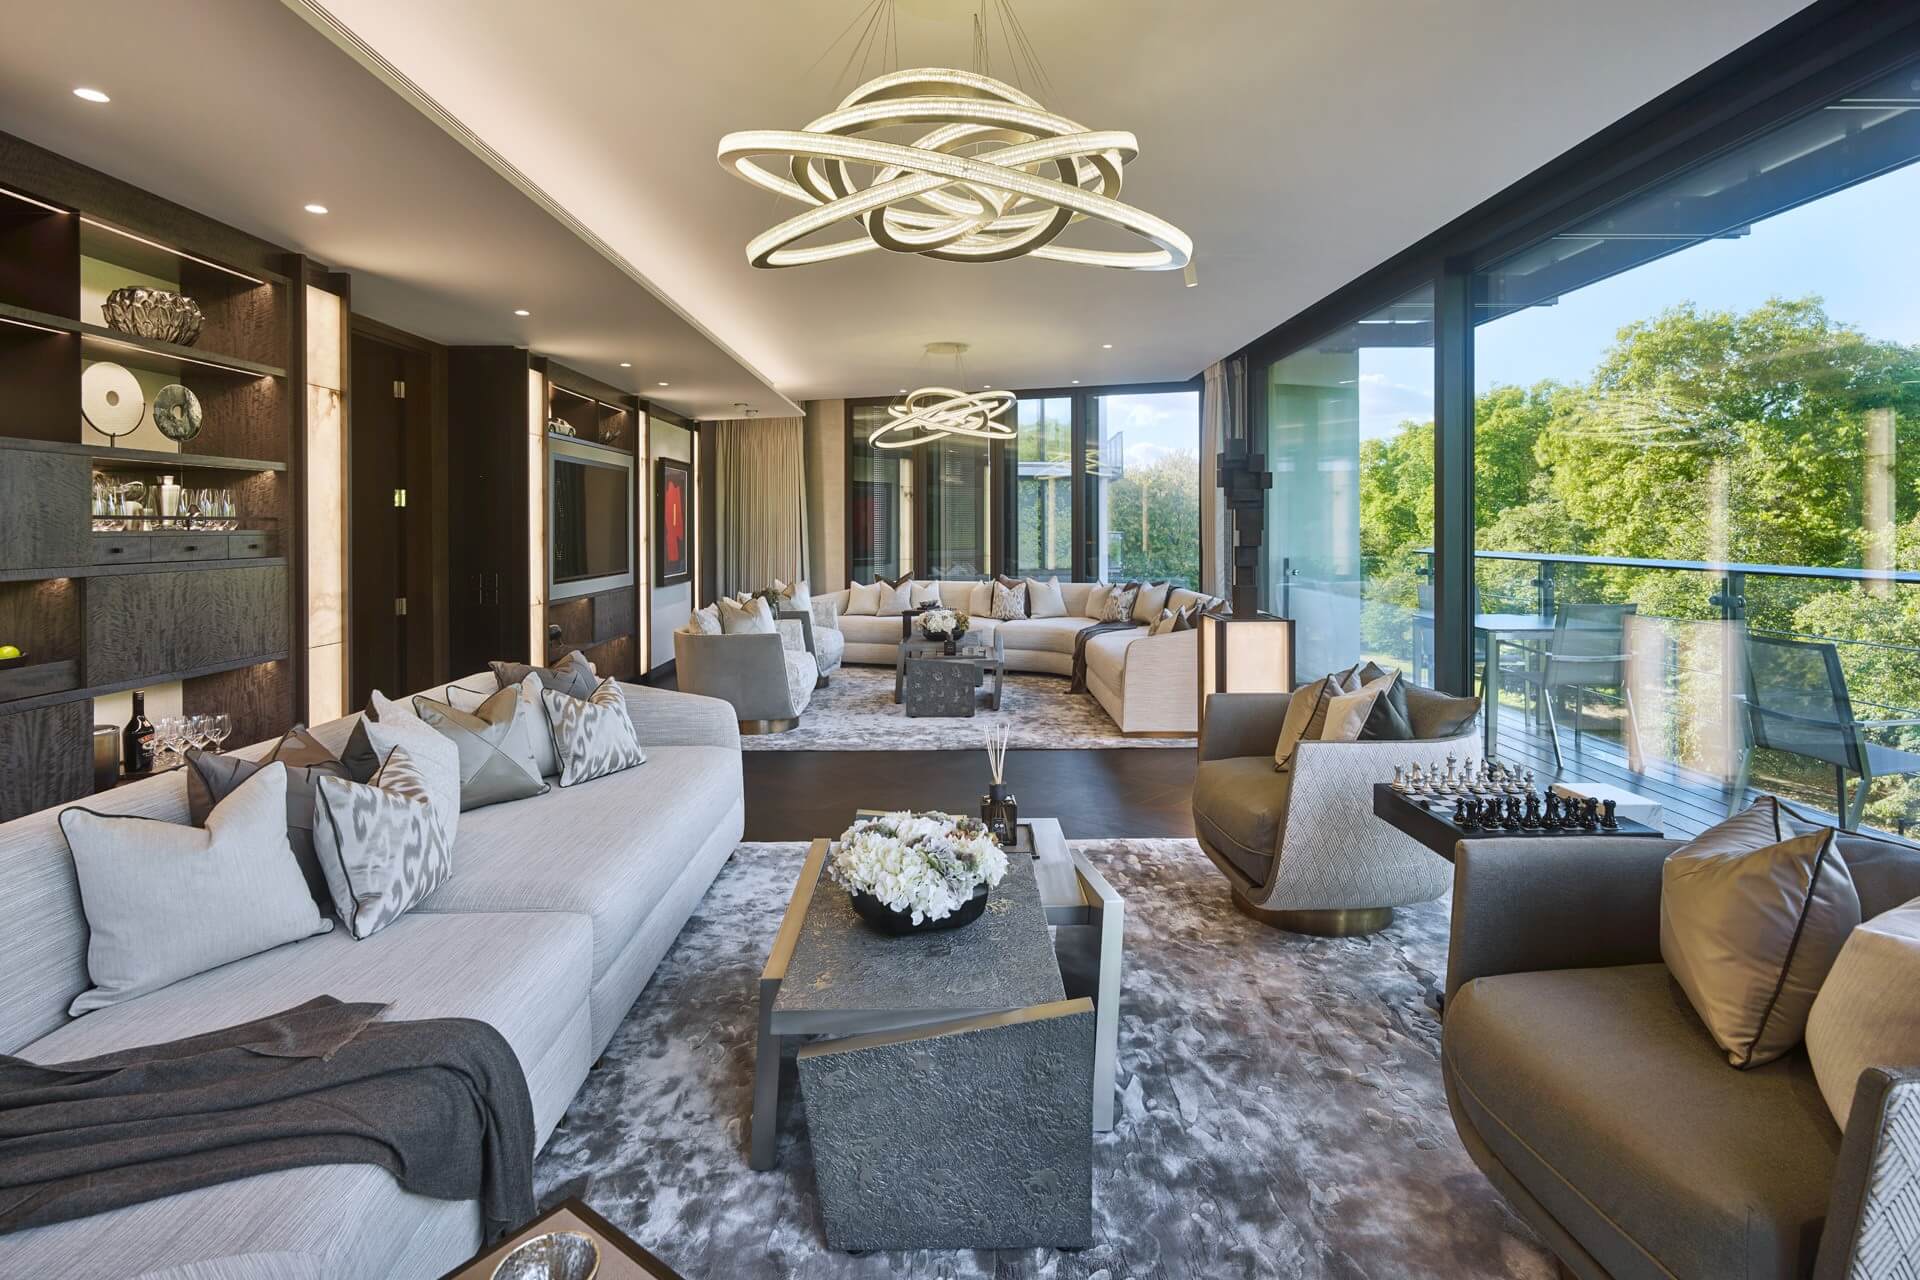 Modern Luxury Interior Design By Elicyon 3, Design Authority